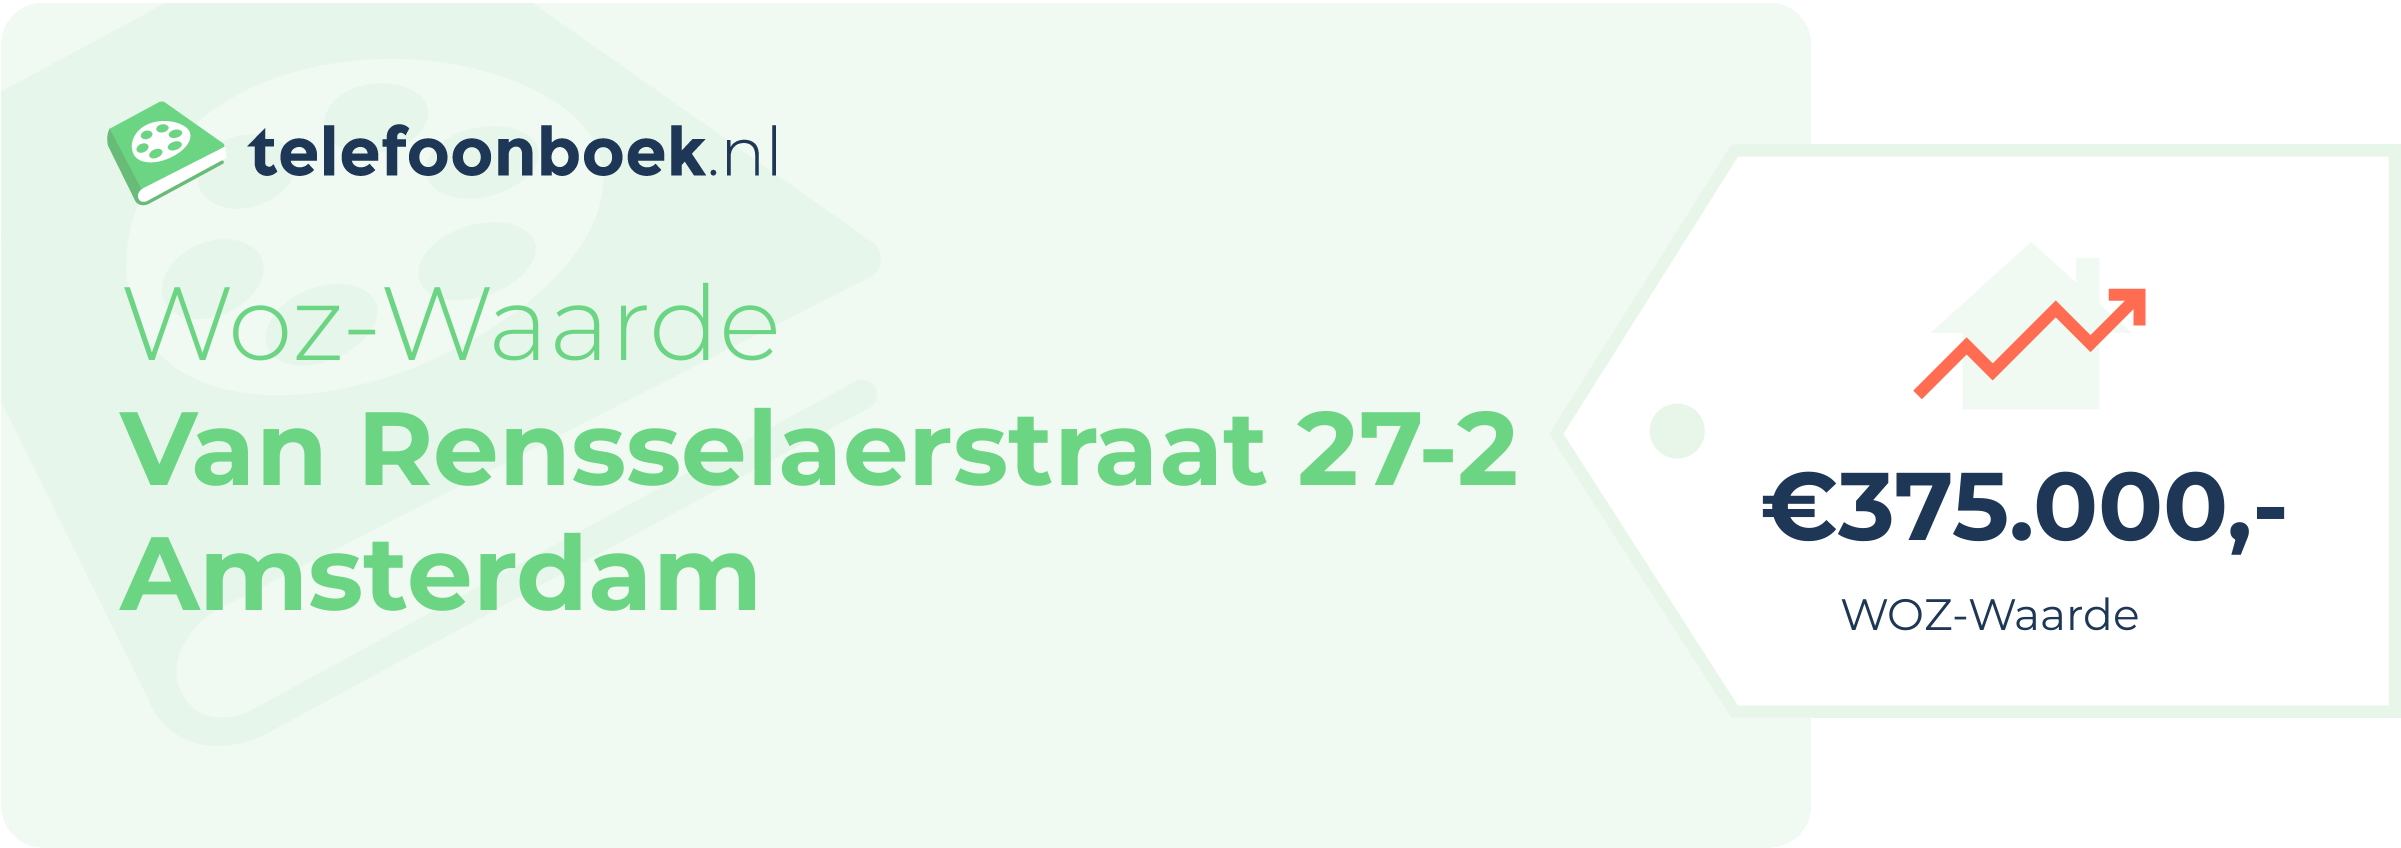 WOZ-waarde Van Rensselaerstraat 27-2 Amsterdam